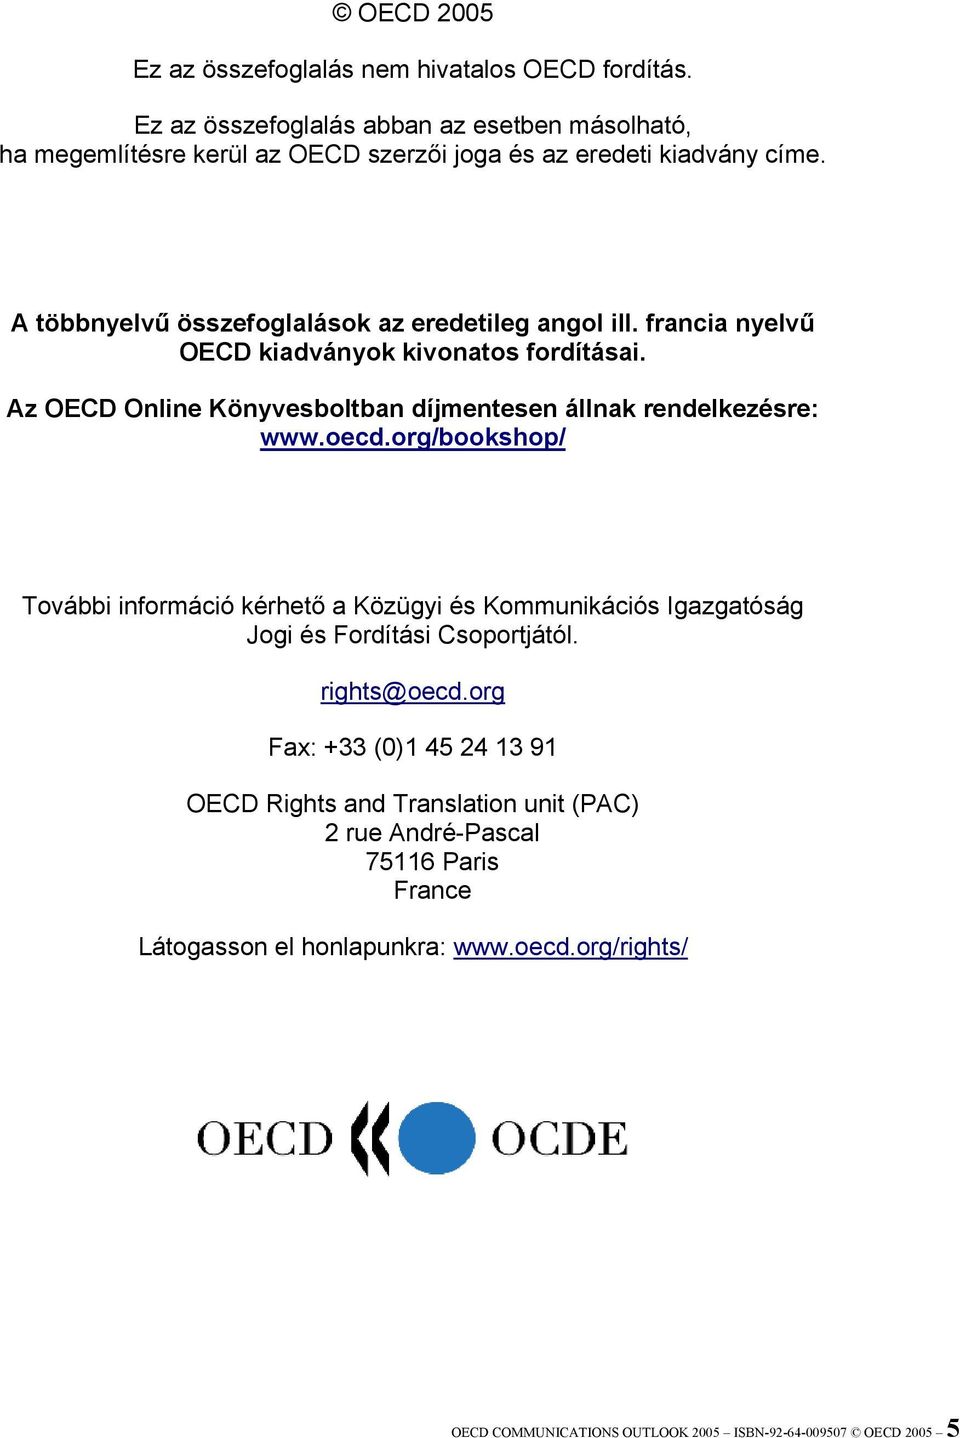 francia nyelvű OECD kiadványok kivonatos fordításai. Az OECD Online Könyvesboltban díjmentesen állnak rendelkezésre: www.oecd.